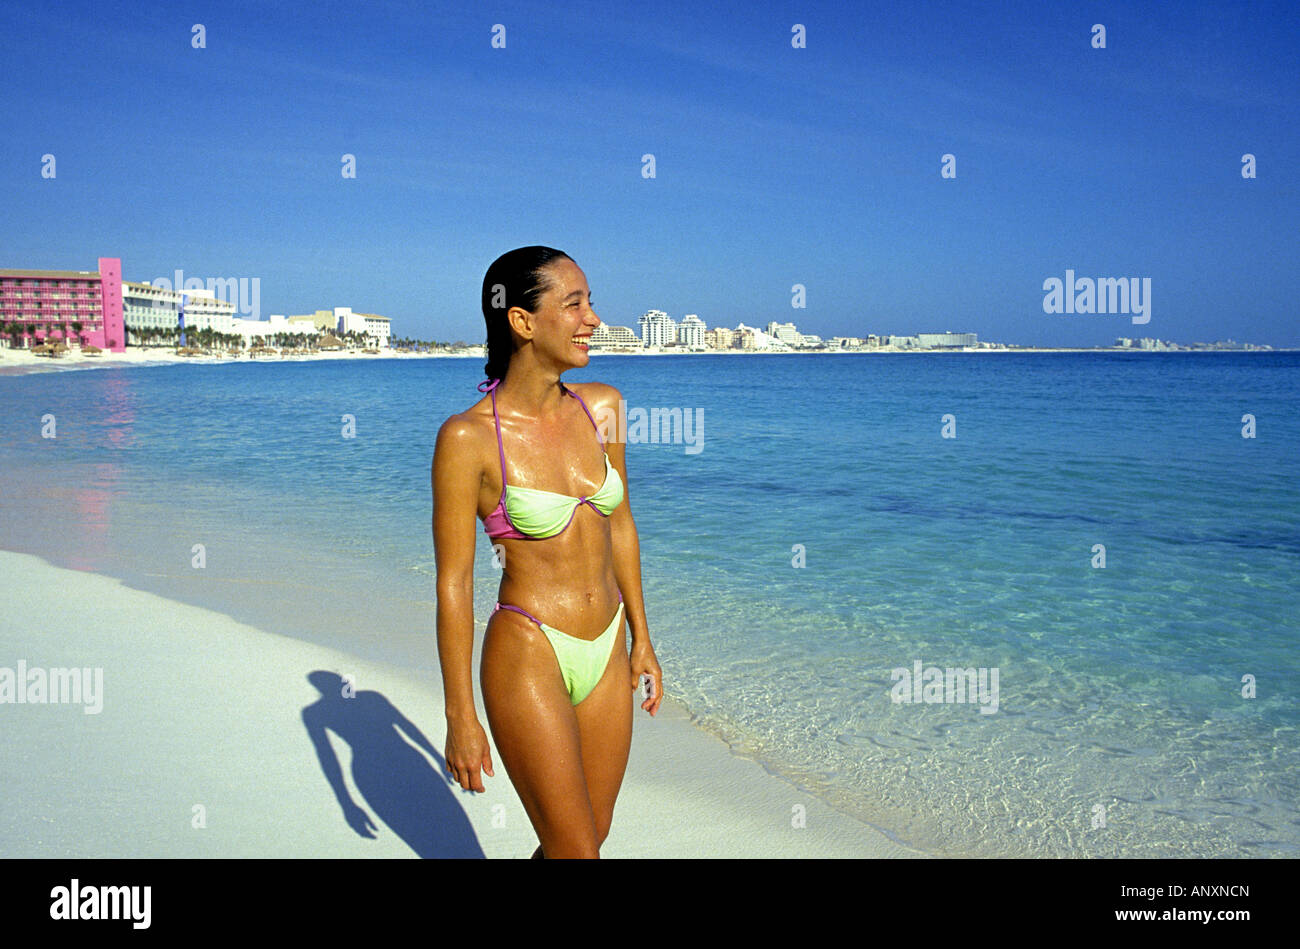 Cancun mexico beach girls